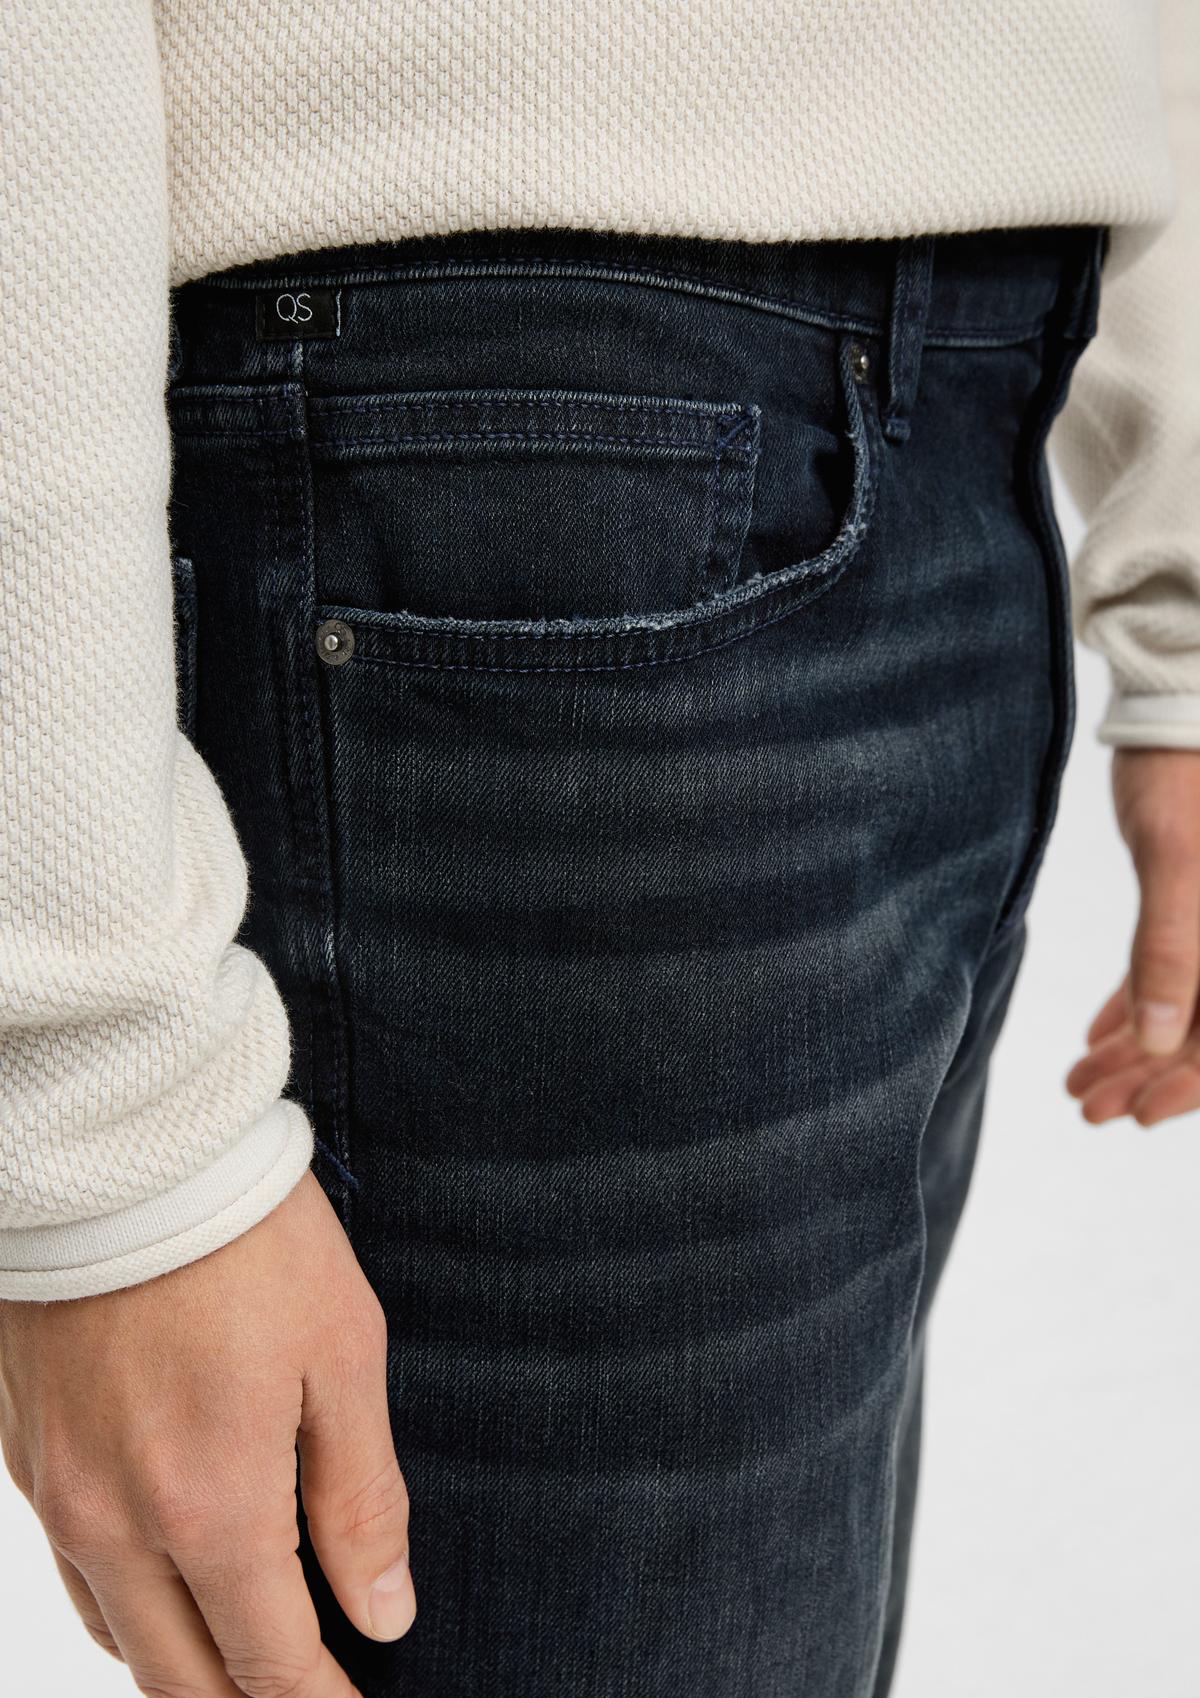 s.Oliver Pete : jean ajustable à la taille